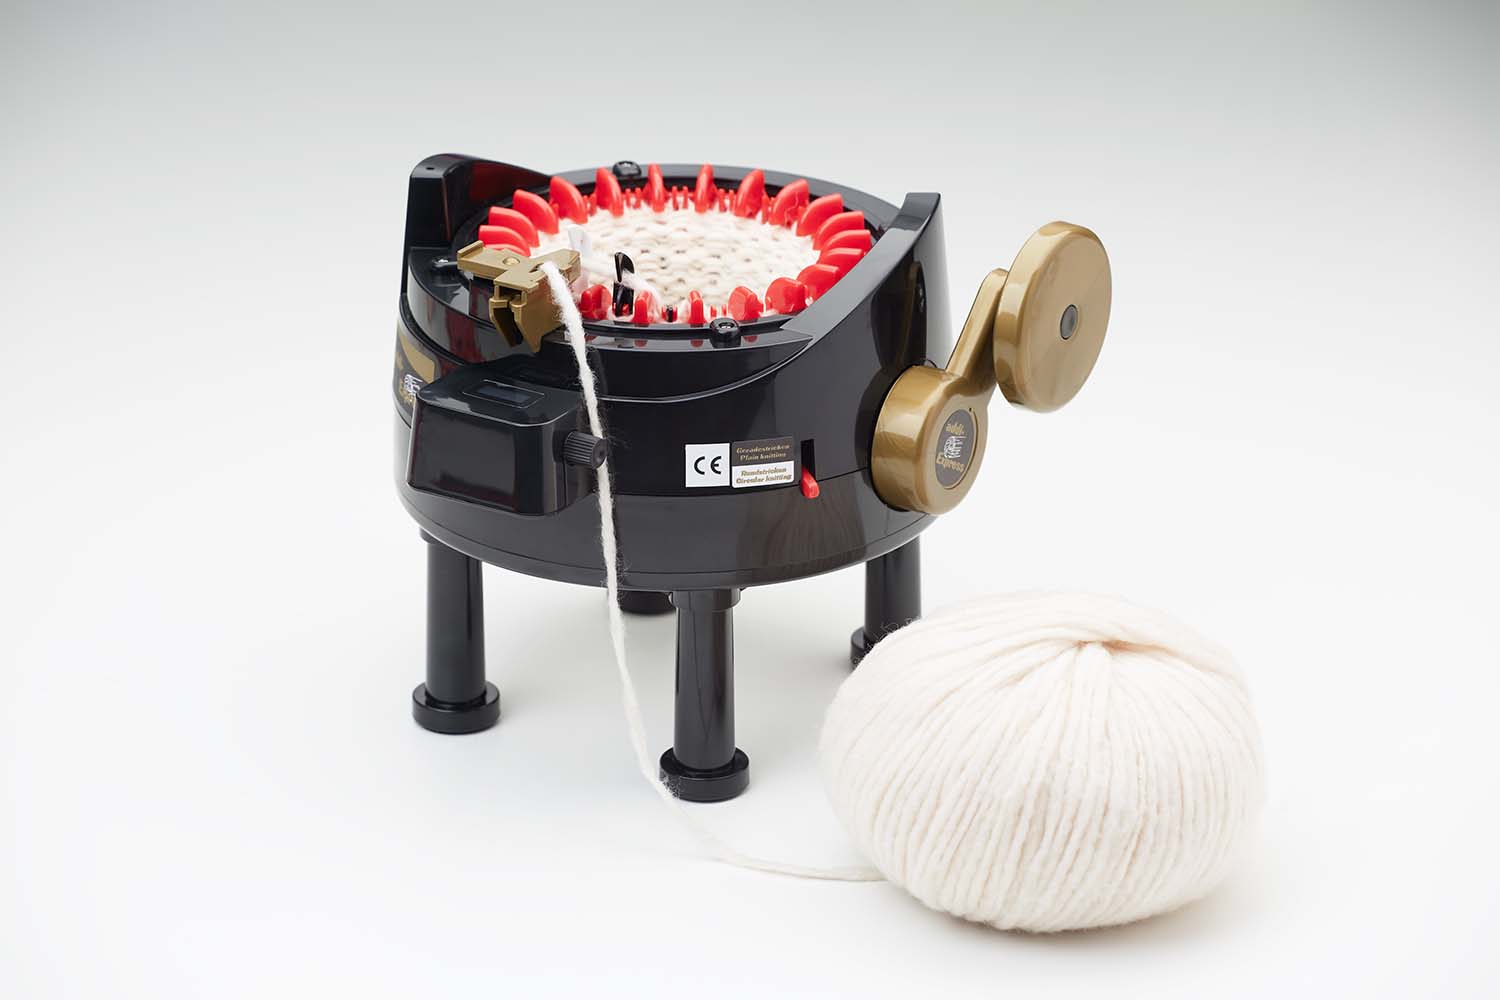 Addi Express Knitting Machine With 22 Needles 990-2 